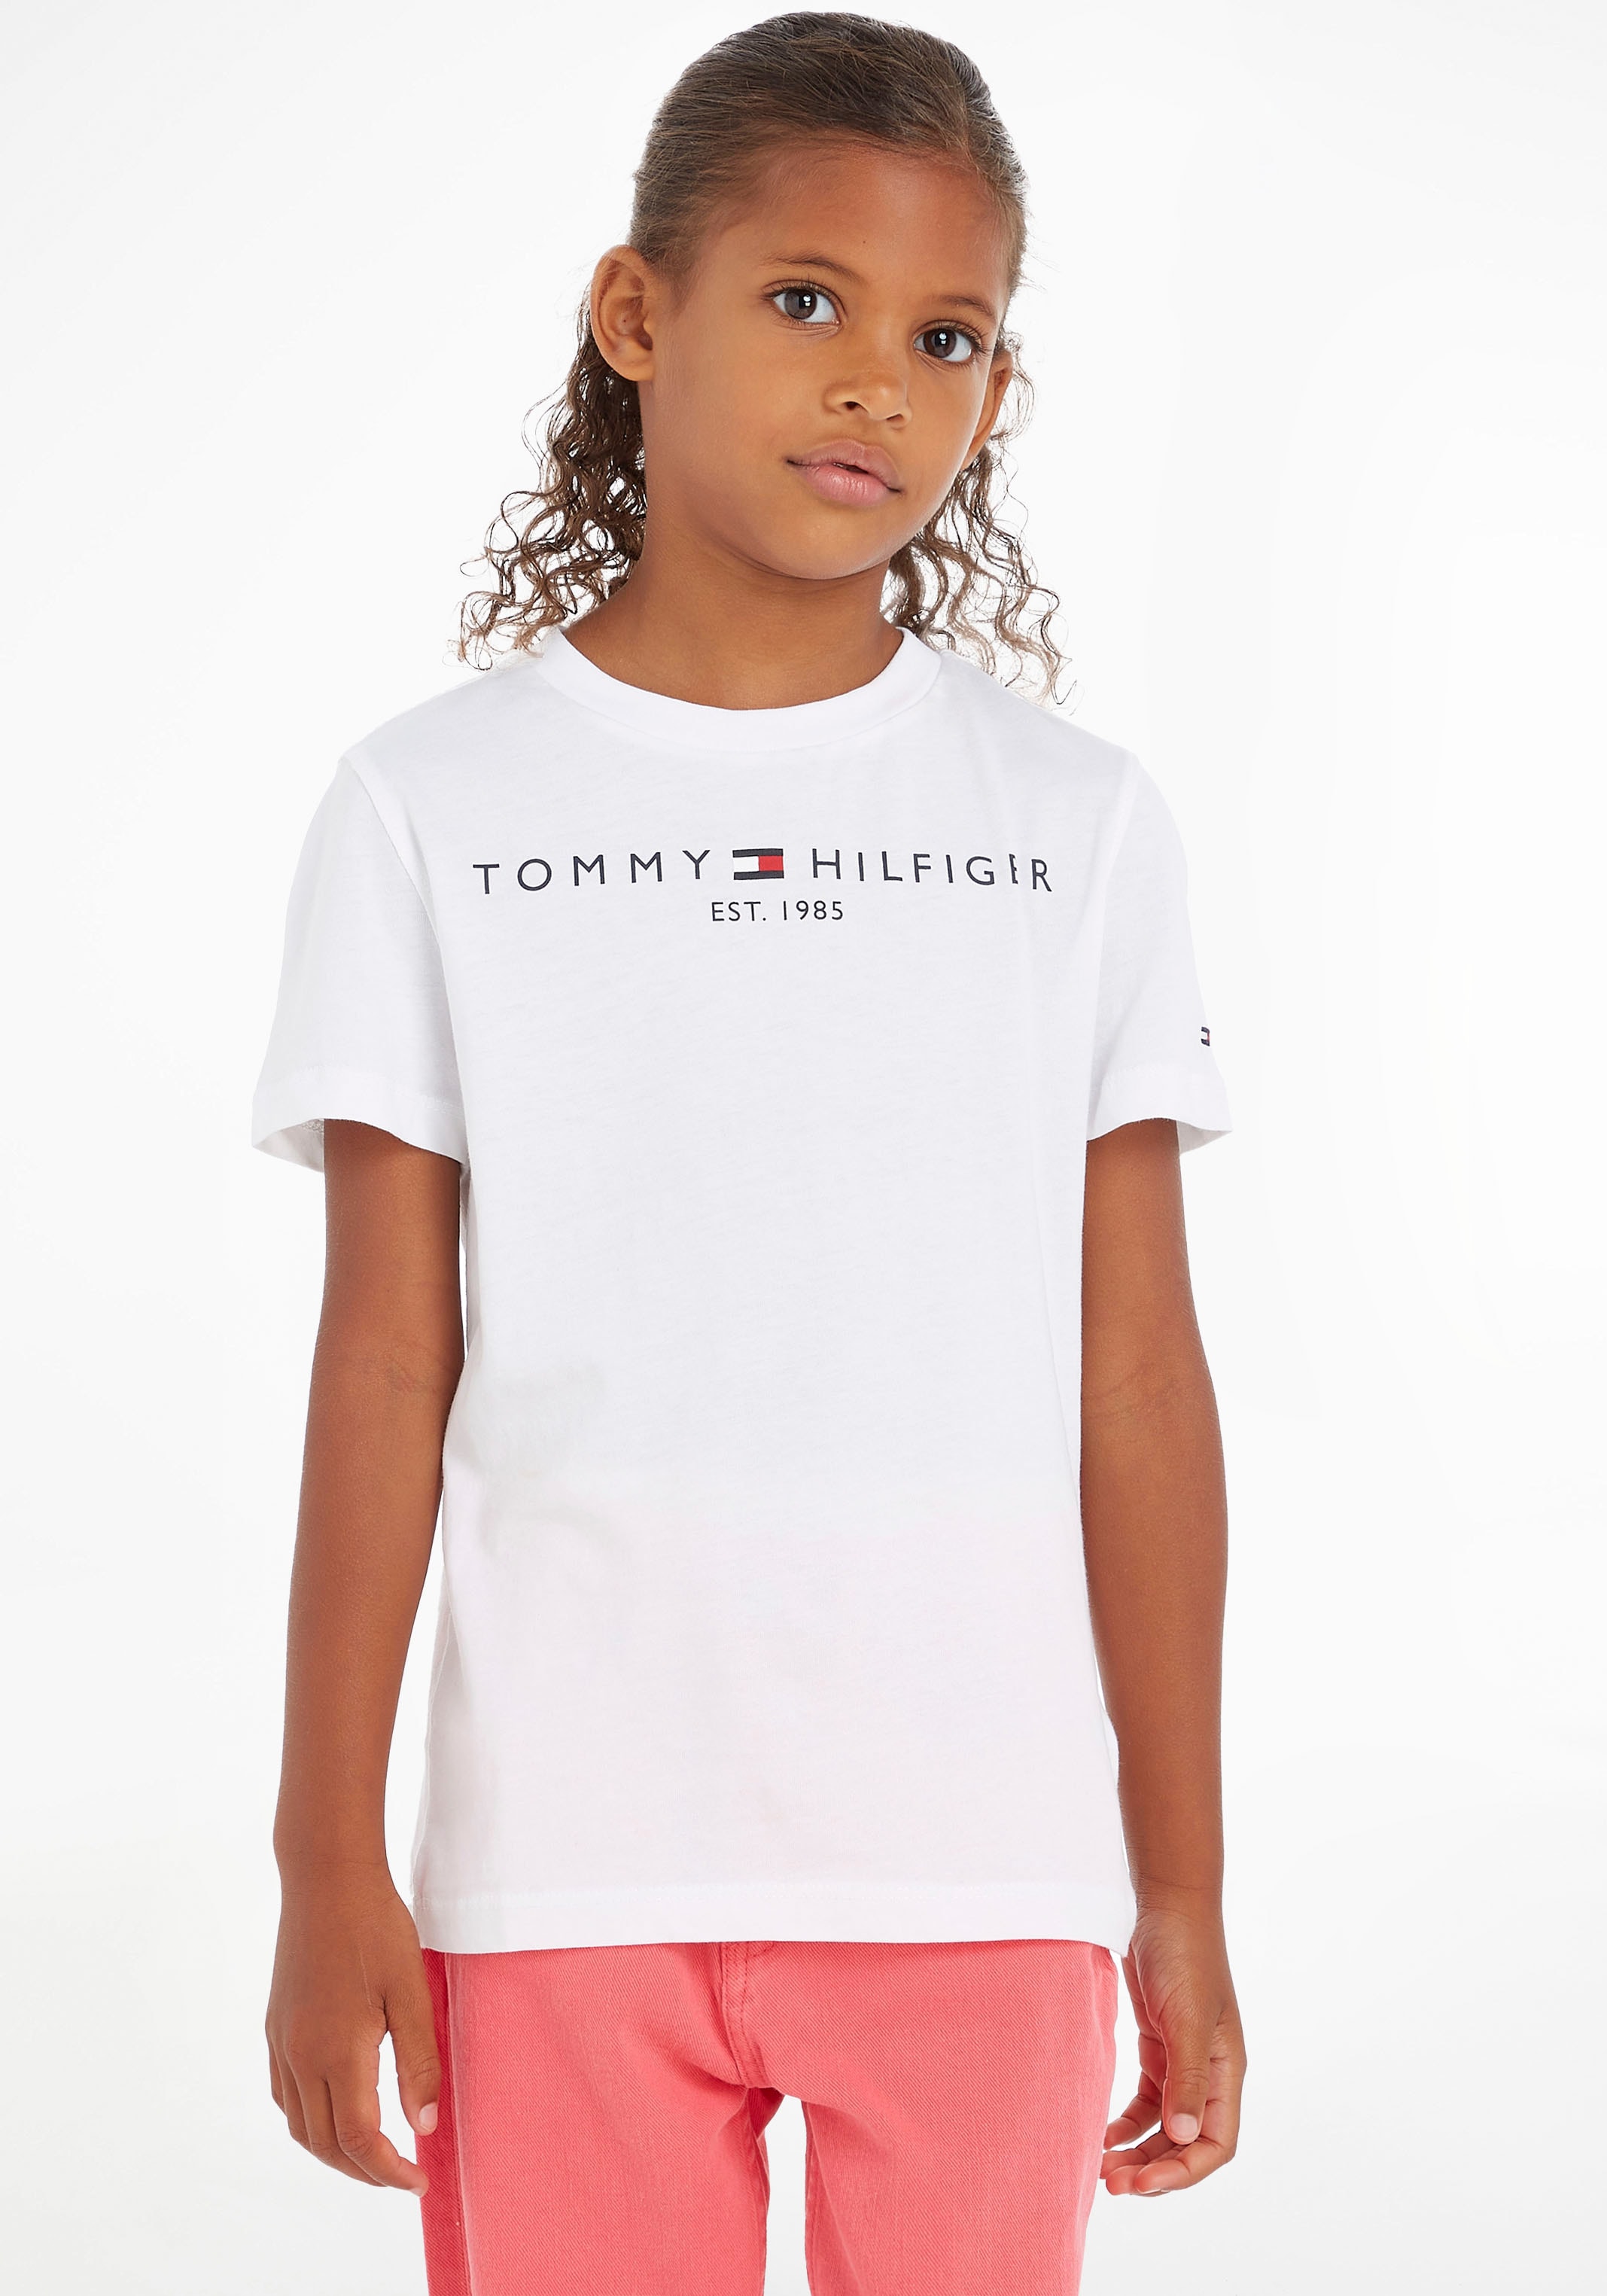 MiniMe,für TEE«, Tommy T-Shirt Kinder shoppen Kids »ESSENTIAL Trendige Junior Mädchen versandkostenfrei und Jungen Hilfiger